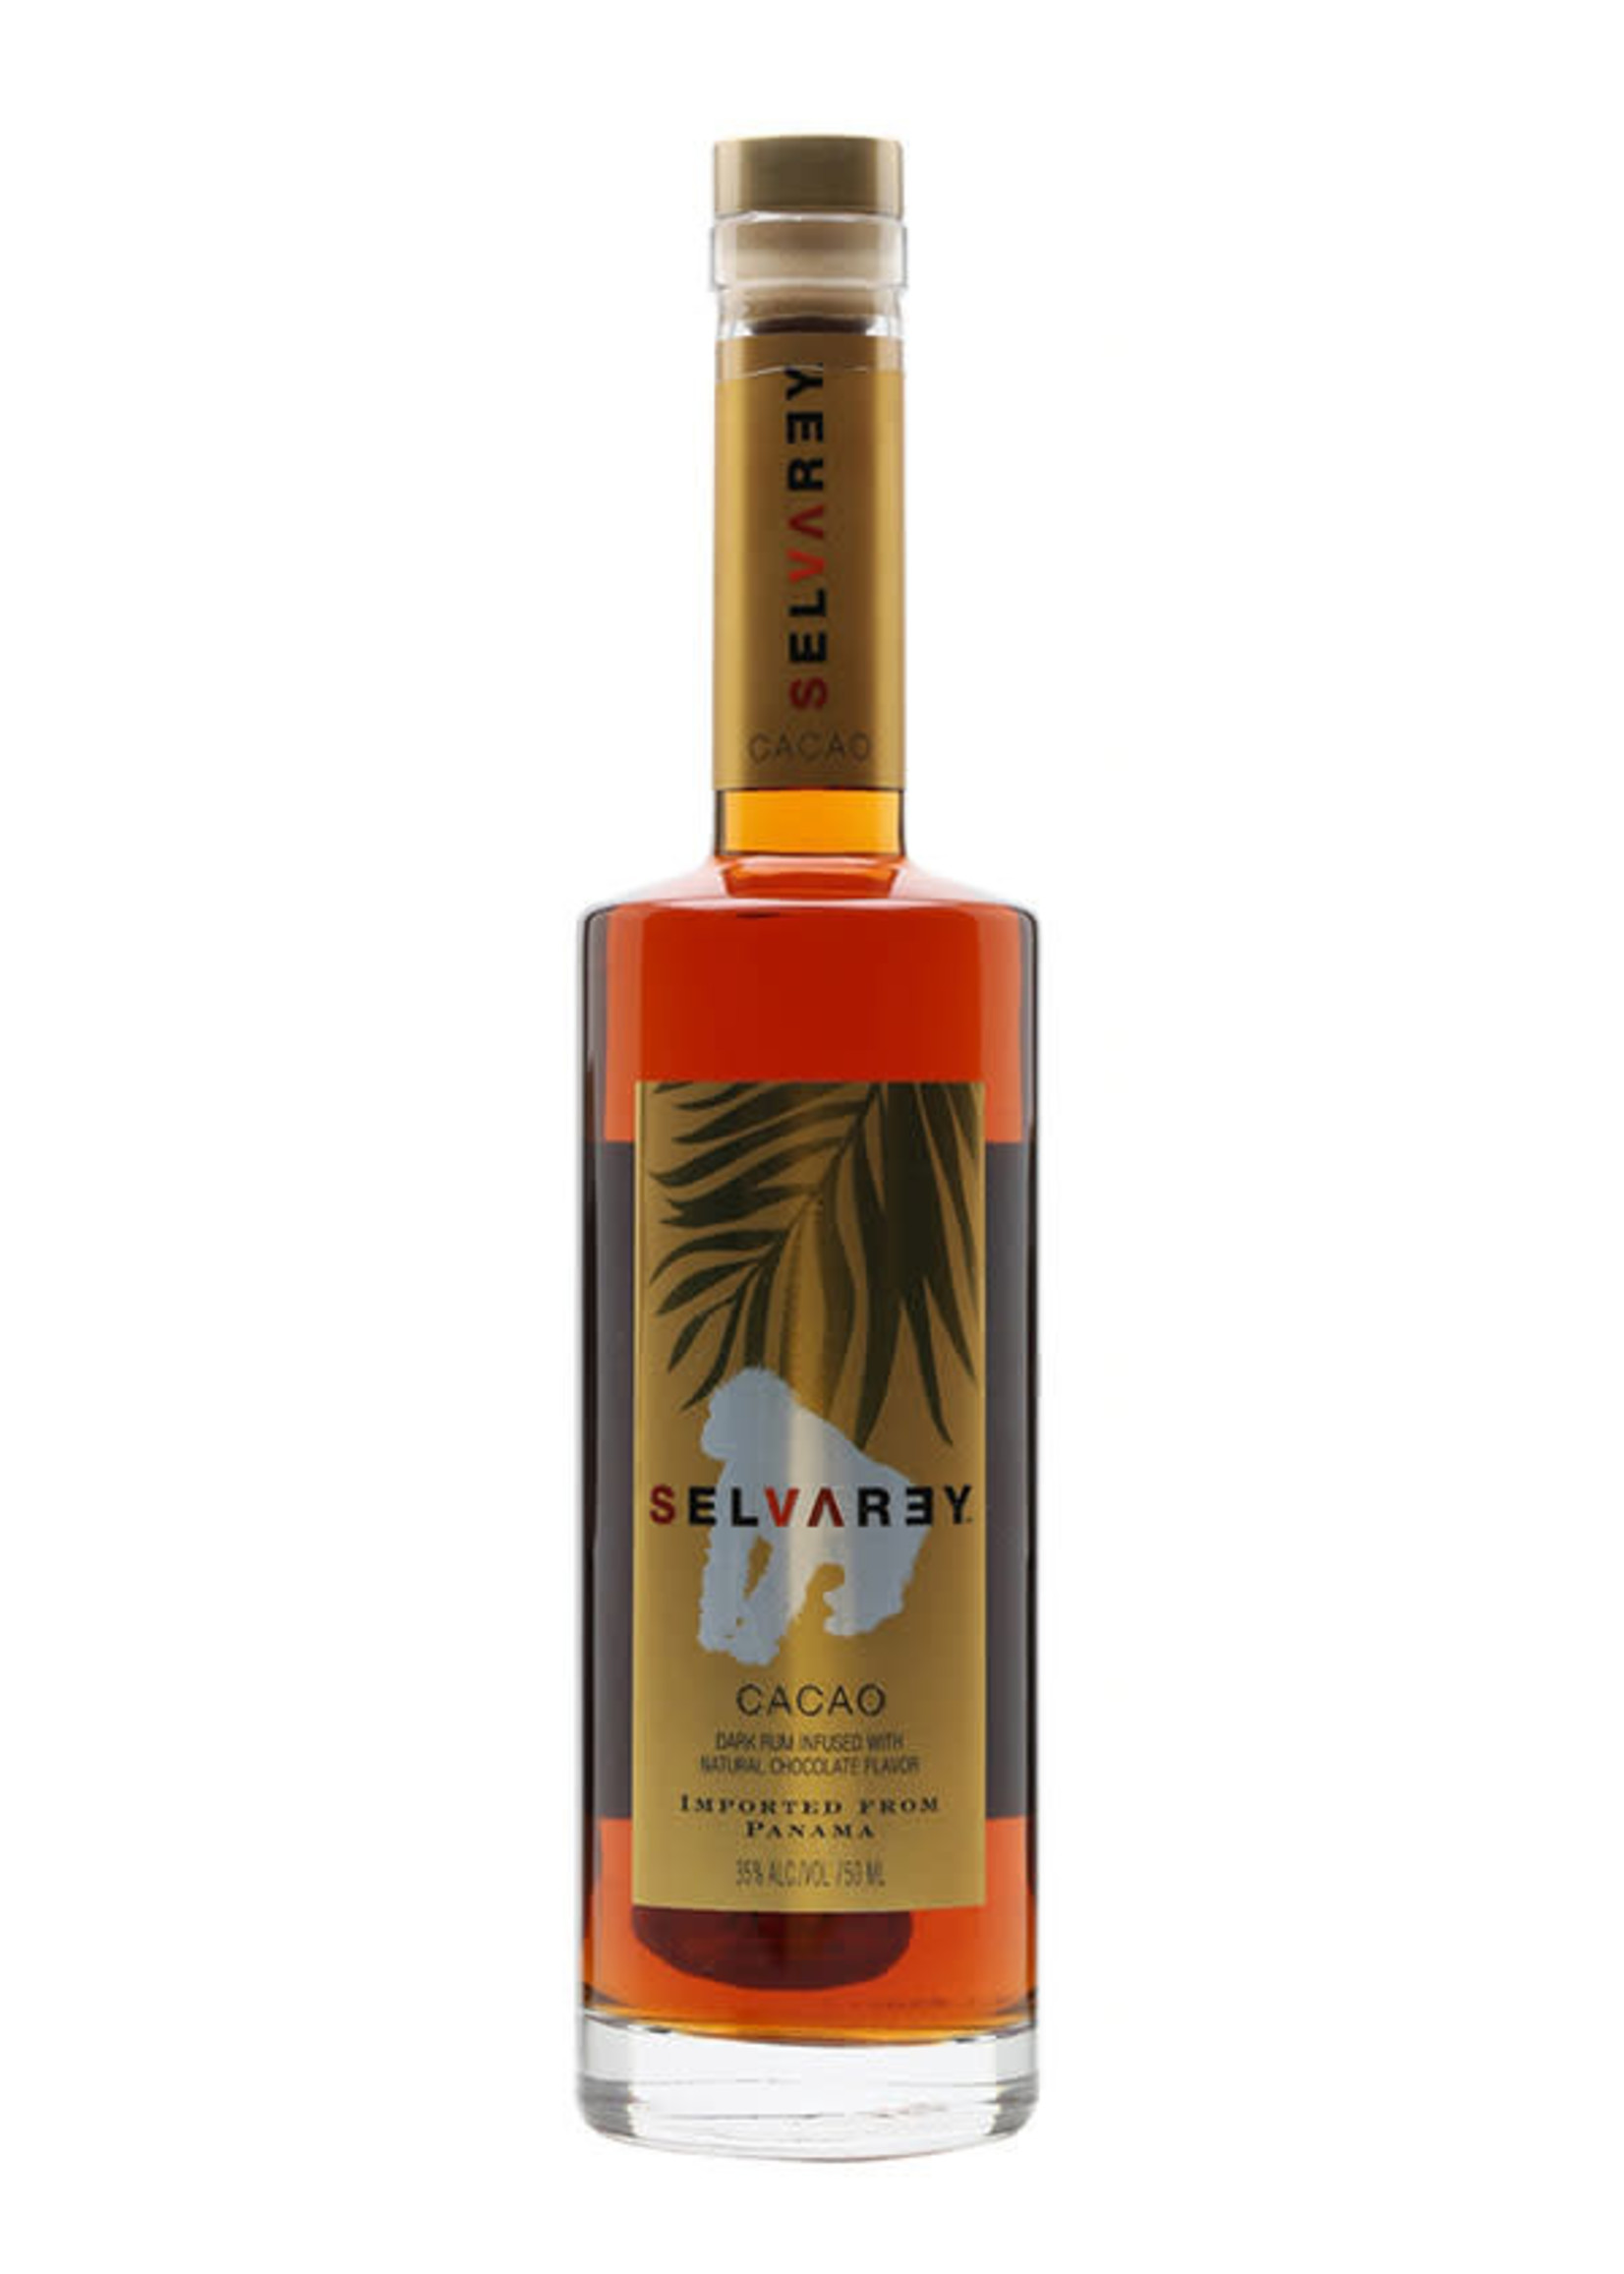 Selvarey Cacao Rum